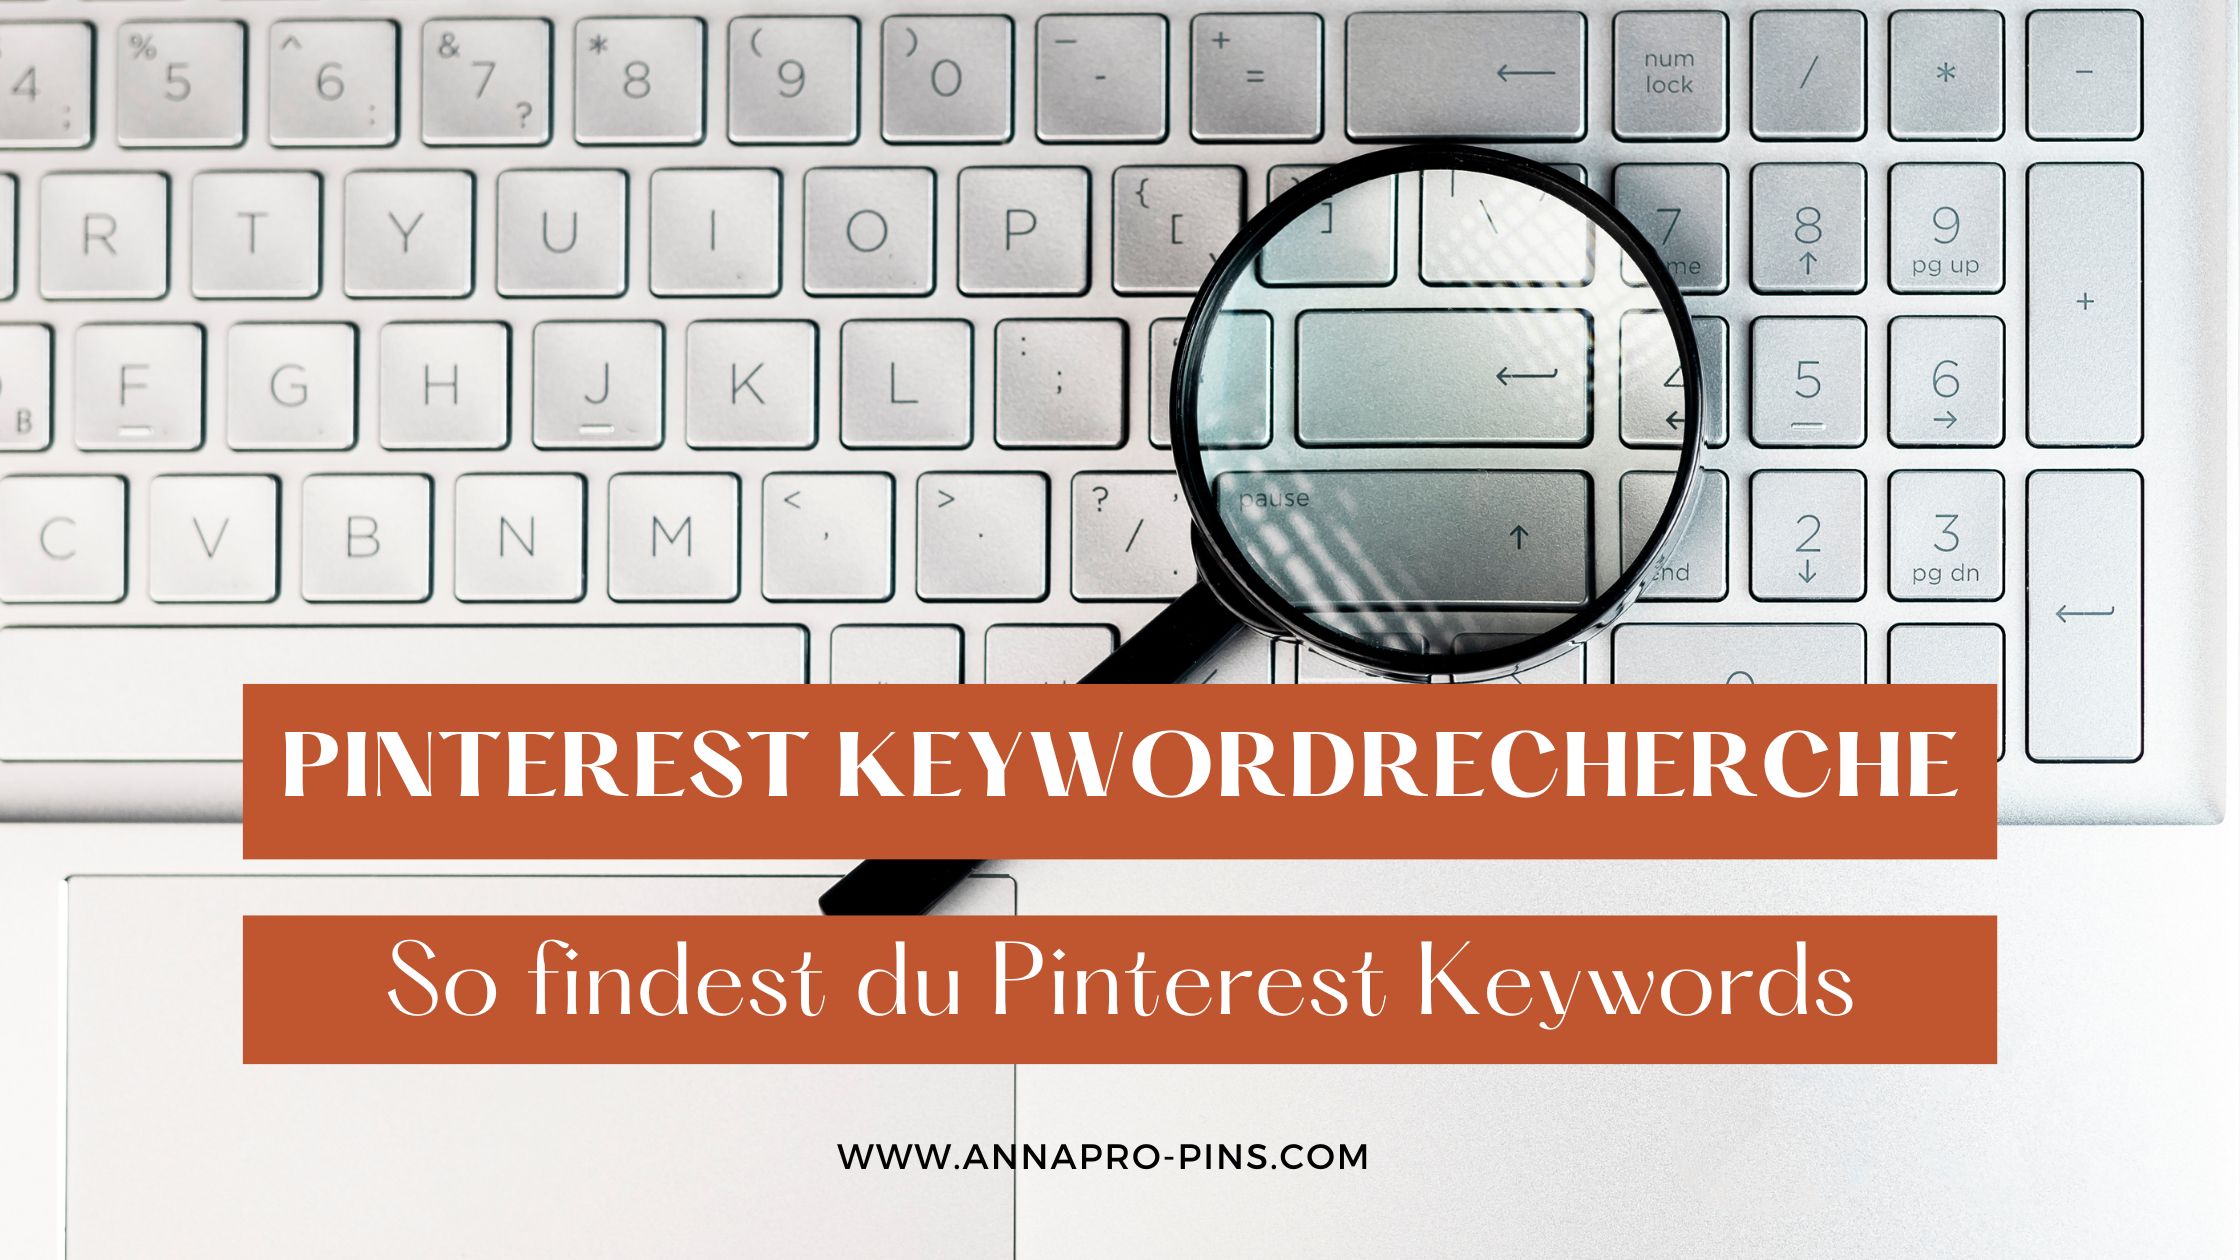 Pinterest Keywordrecherche - so findest du Pinterest Keywords